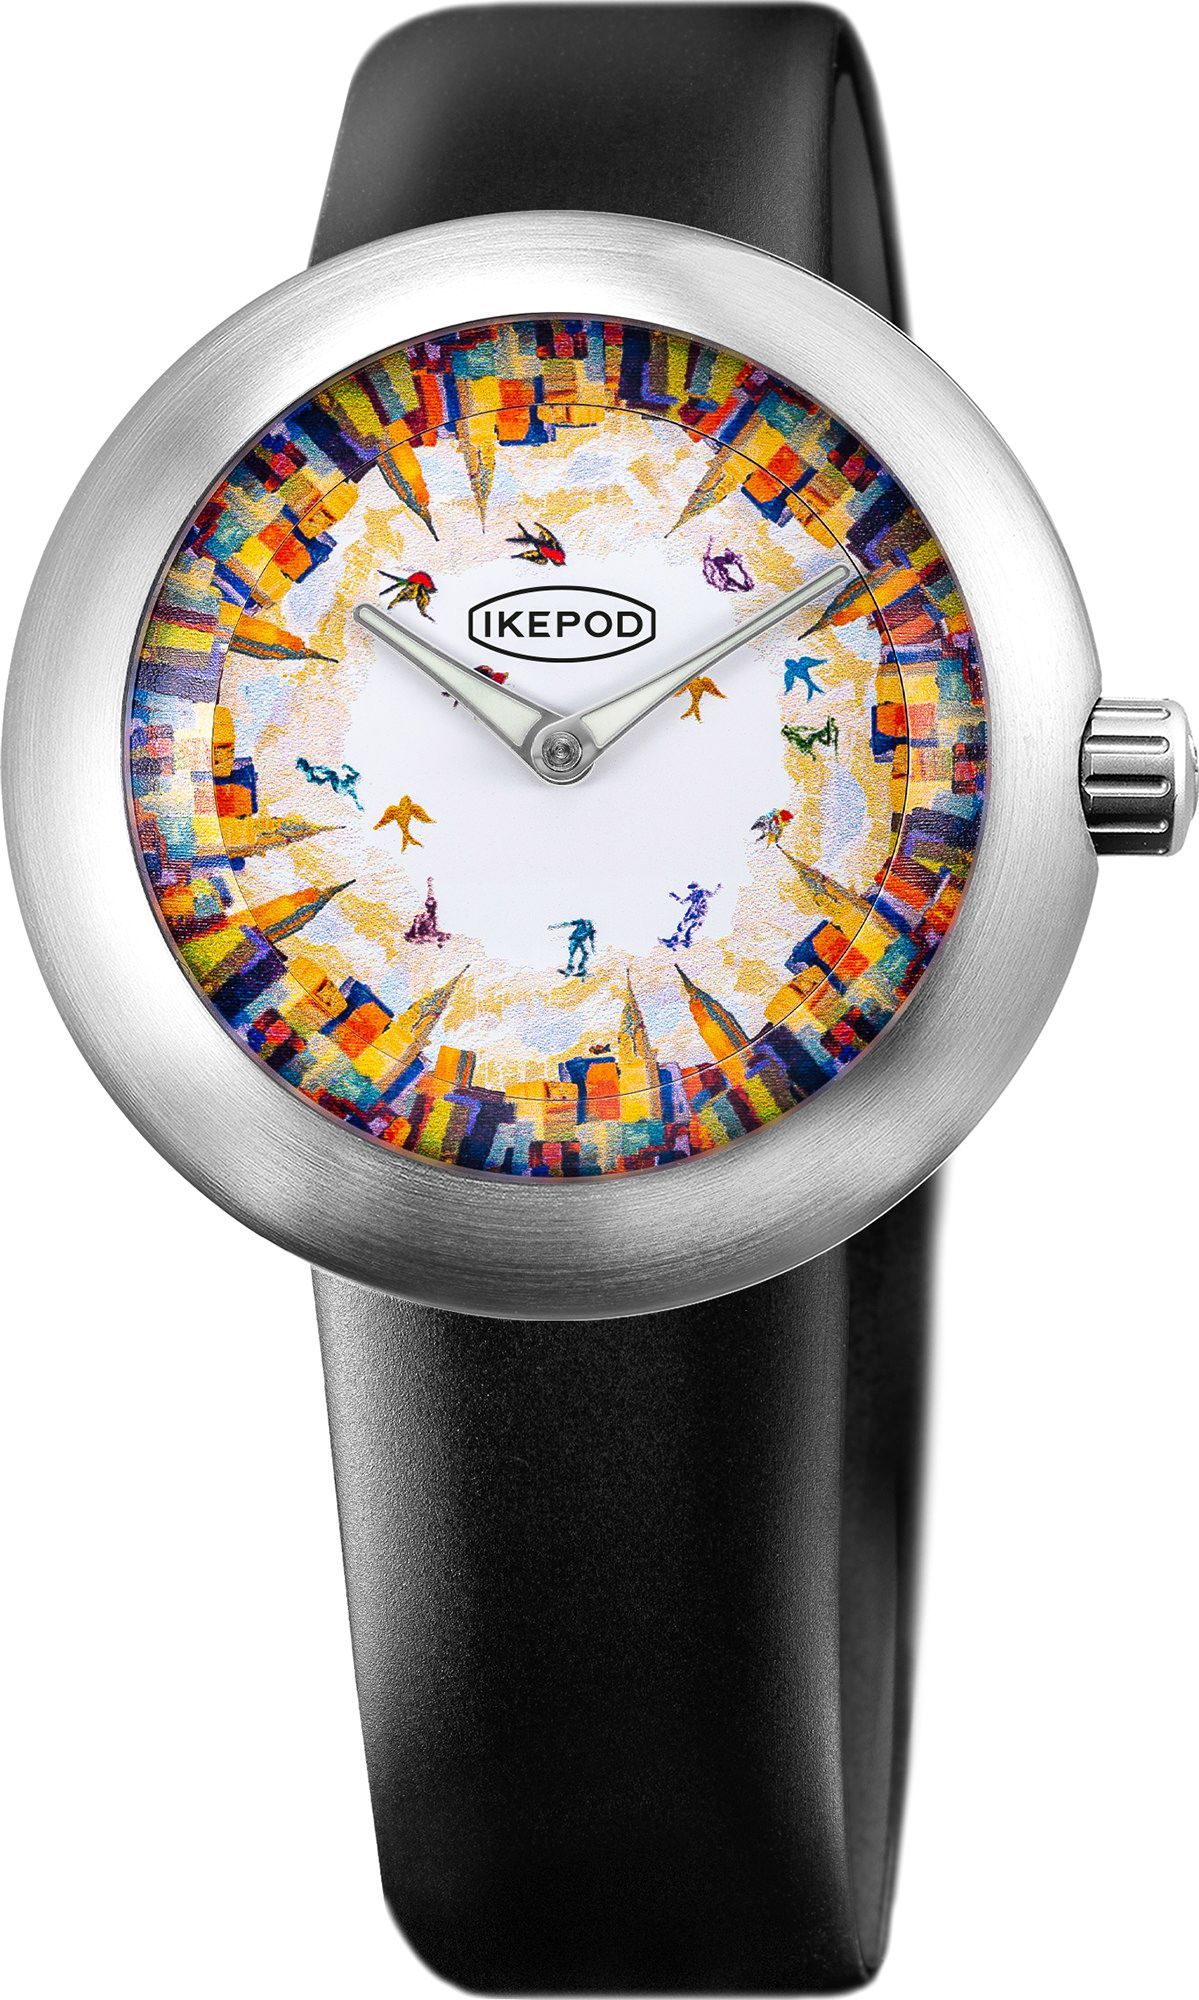 Ikepod  46 mm Watch in Multicolor Dial For Men - 1